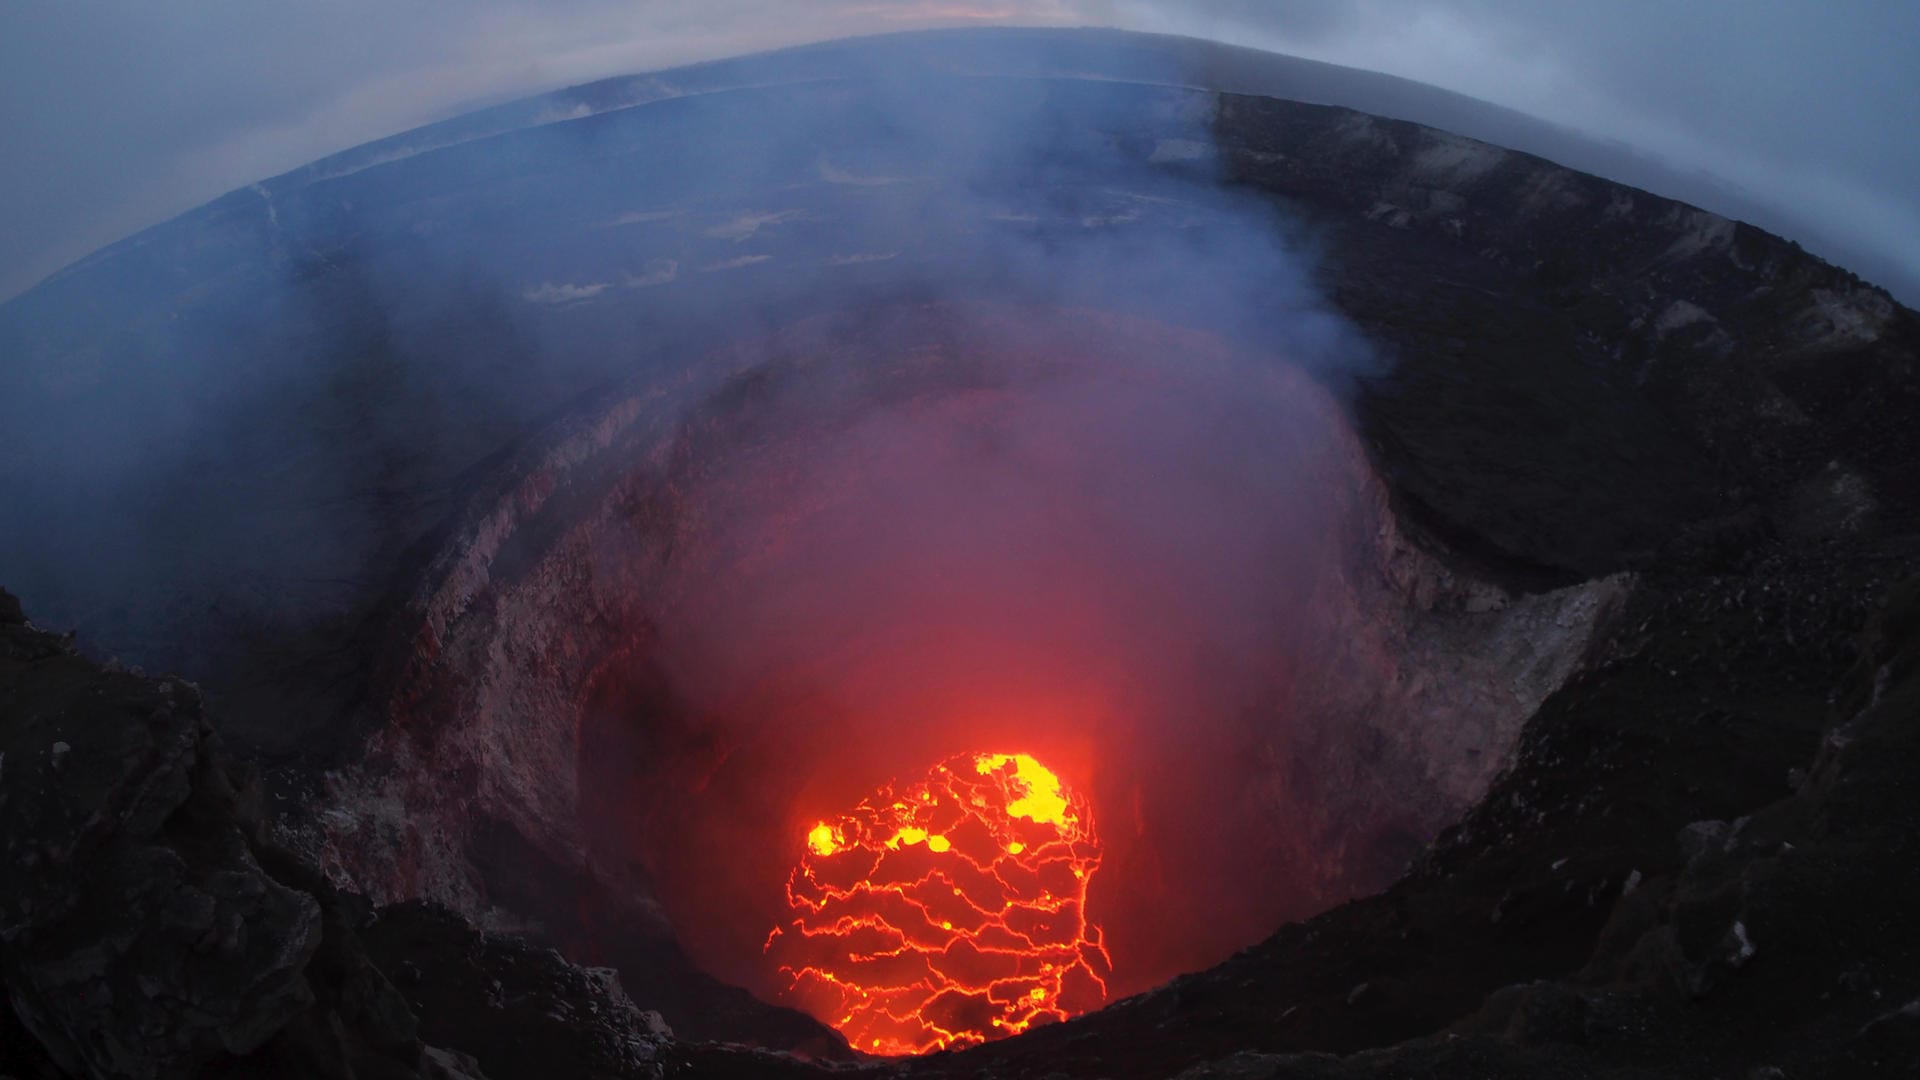 Das Innere des Kilauea Vulkans: Der feuerspeiernde Berg gilt als einer der aktivsten Vulkane weltweit. Brechen die für Hawaii typischen Schildvulkane aus, kann Lava nicht nur aus dem Krater fließen, sondern auch durch unterirdische Risse an anderen Stellen an die Oberfläche treten.